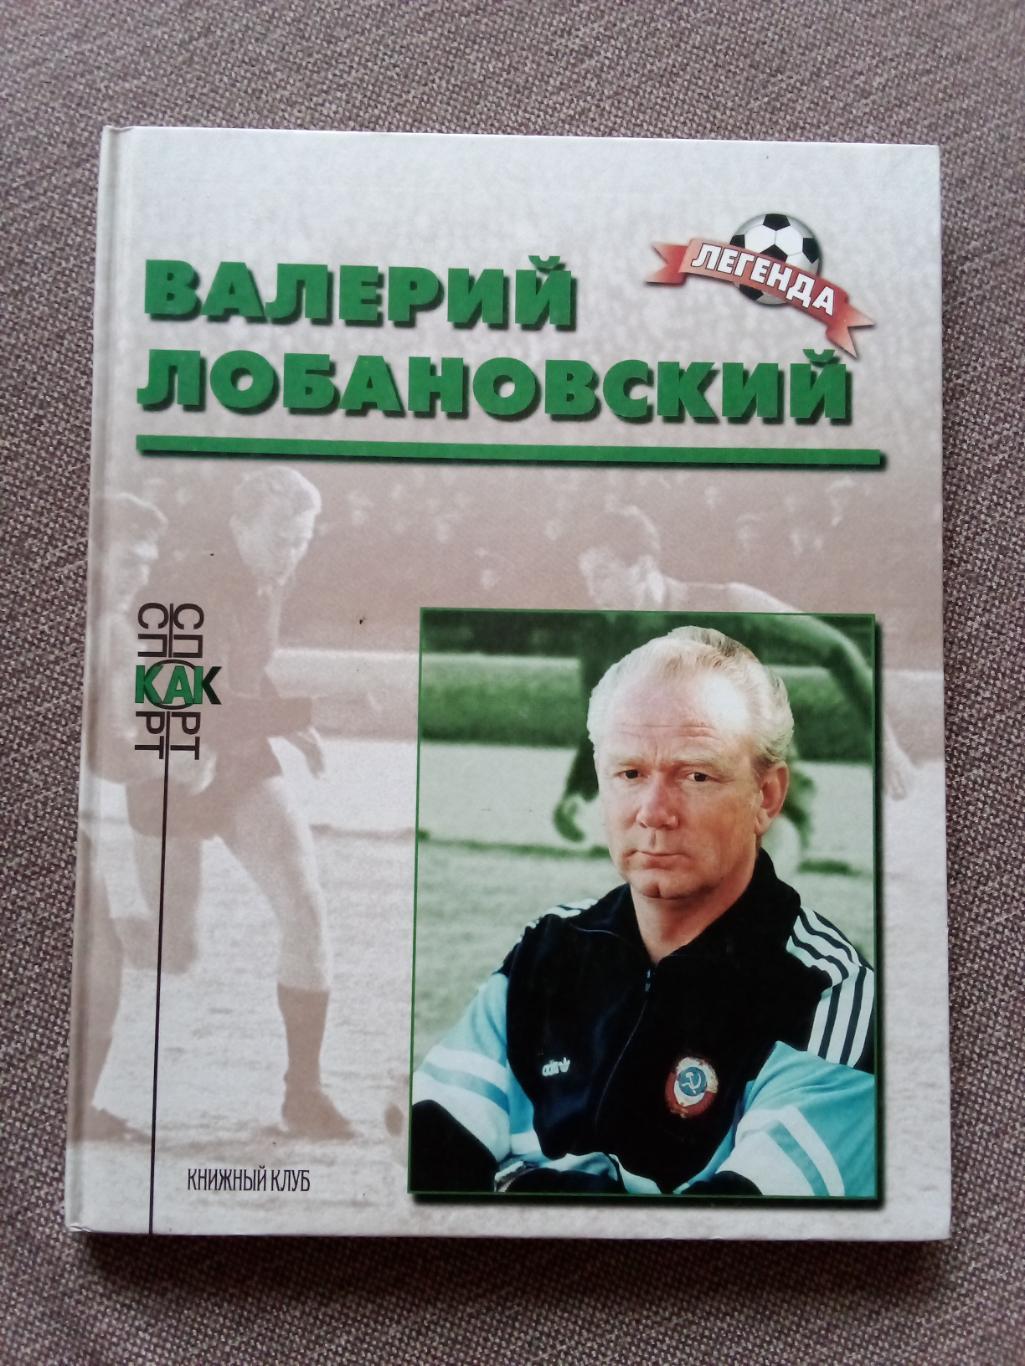 Футбол : Алексей Кузнецов - Валерий Лобановский 2001 г. ФКДинамо(Киев)